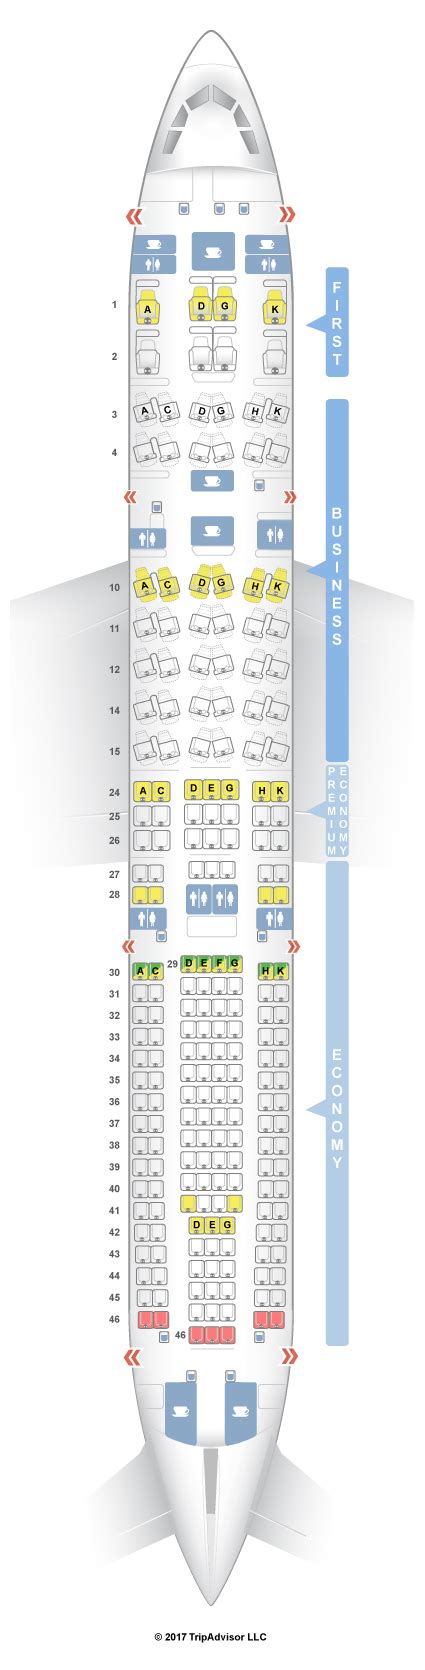 Seatguru Seat Map Lufthansa Airbus A V Hot Sex Picture